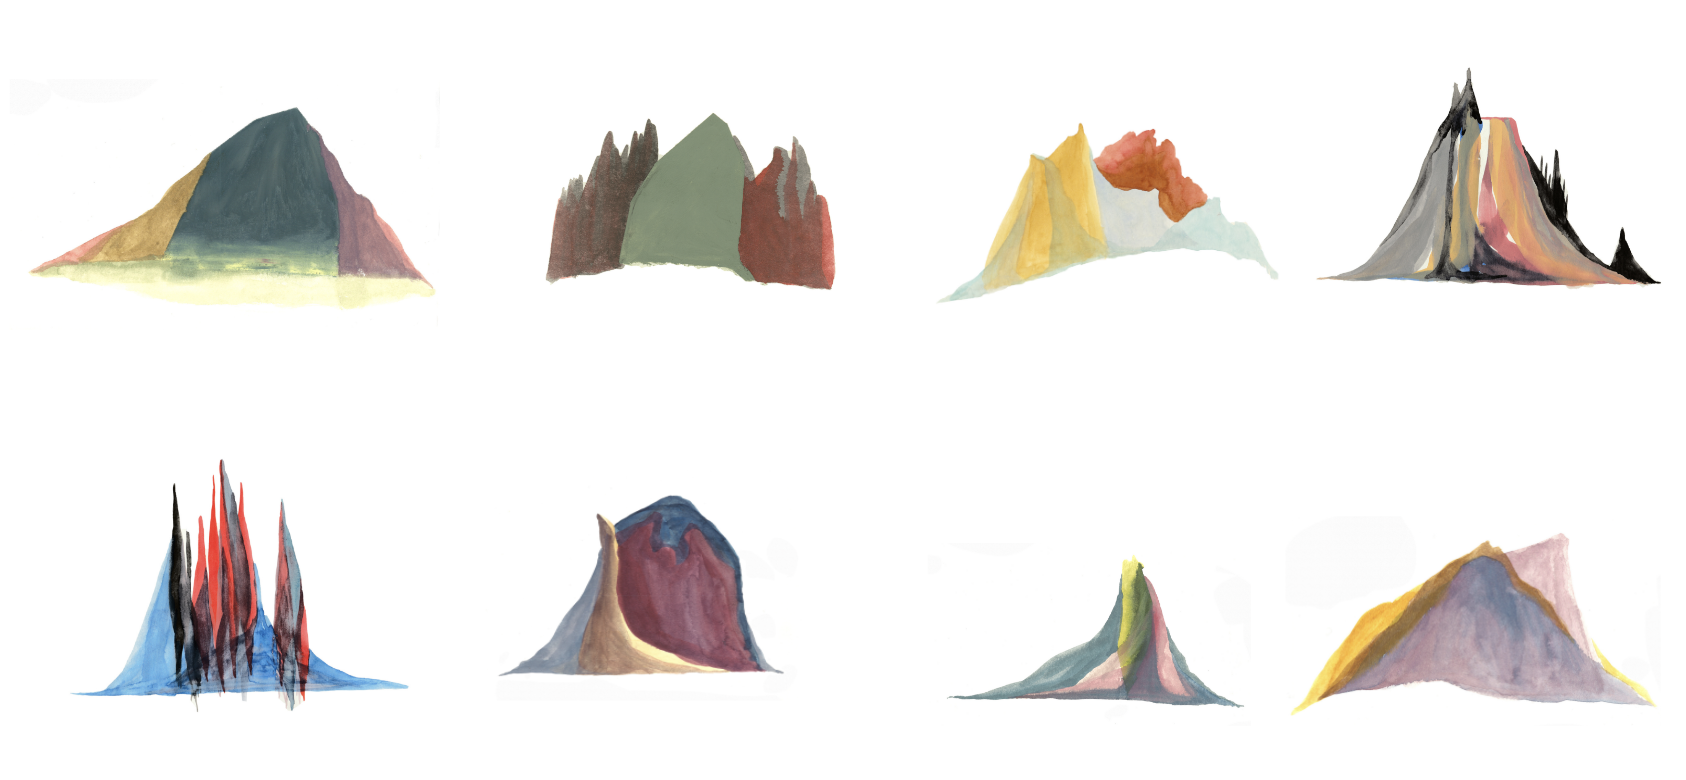 Volcano Series